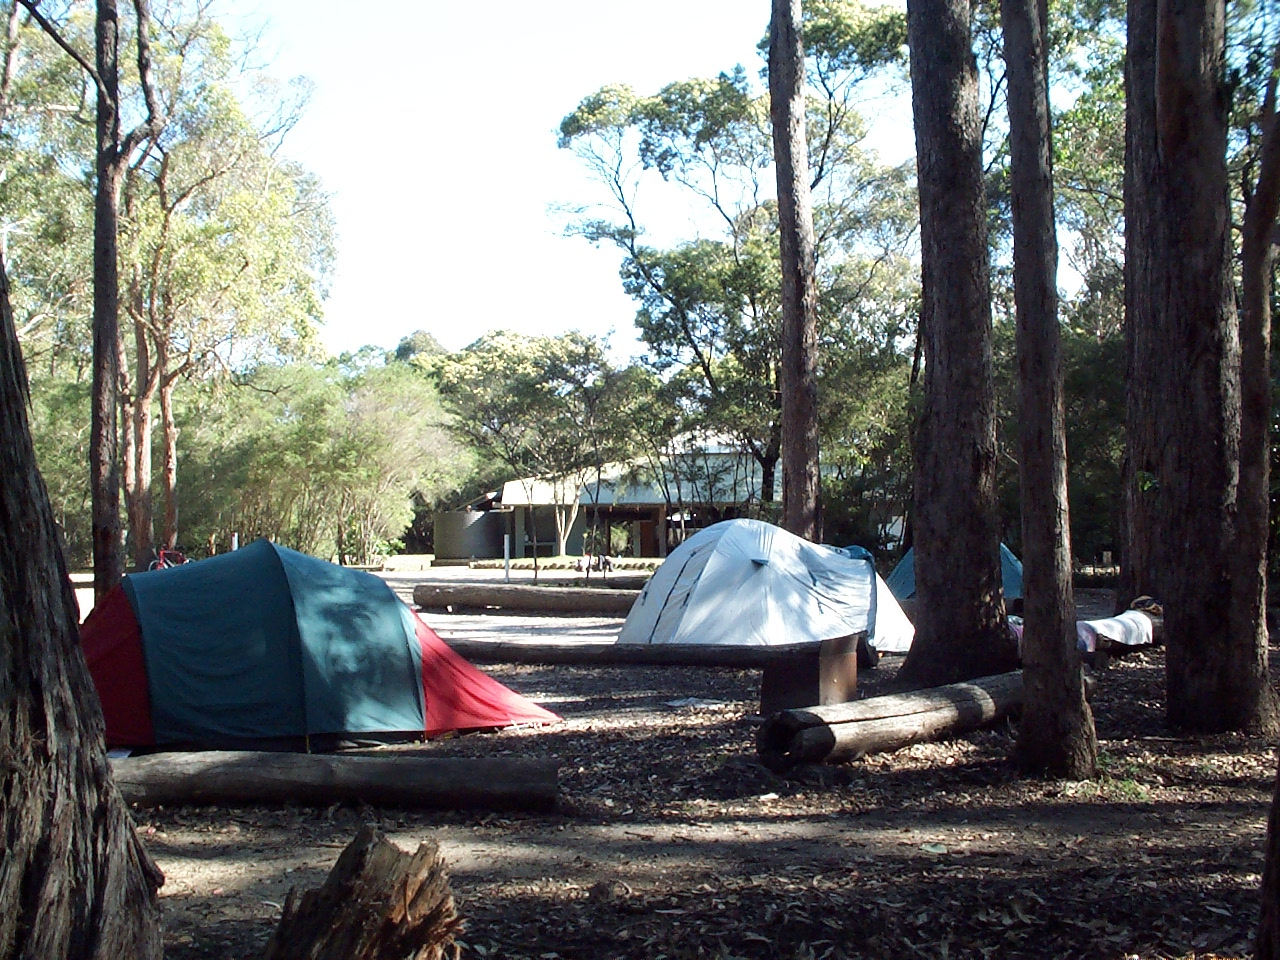 Camping at Hobart beach